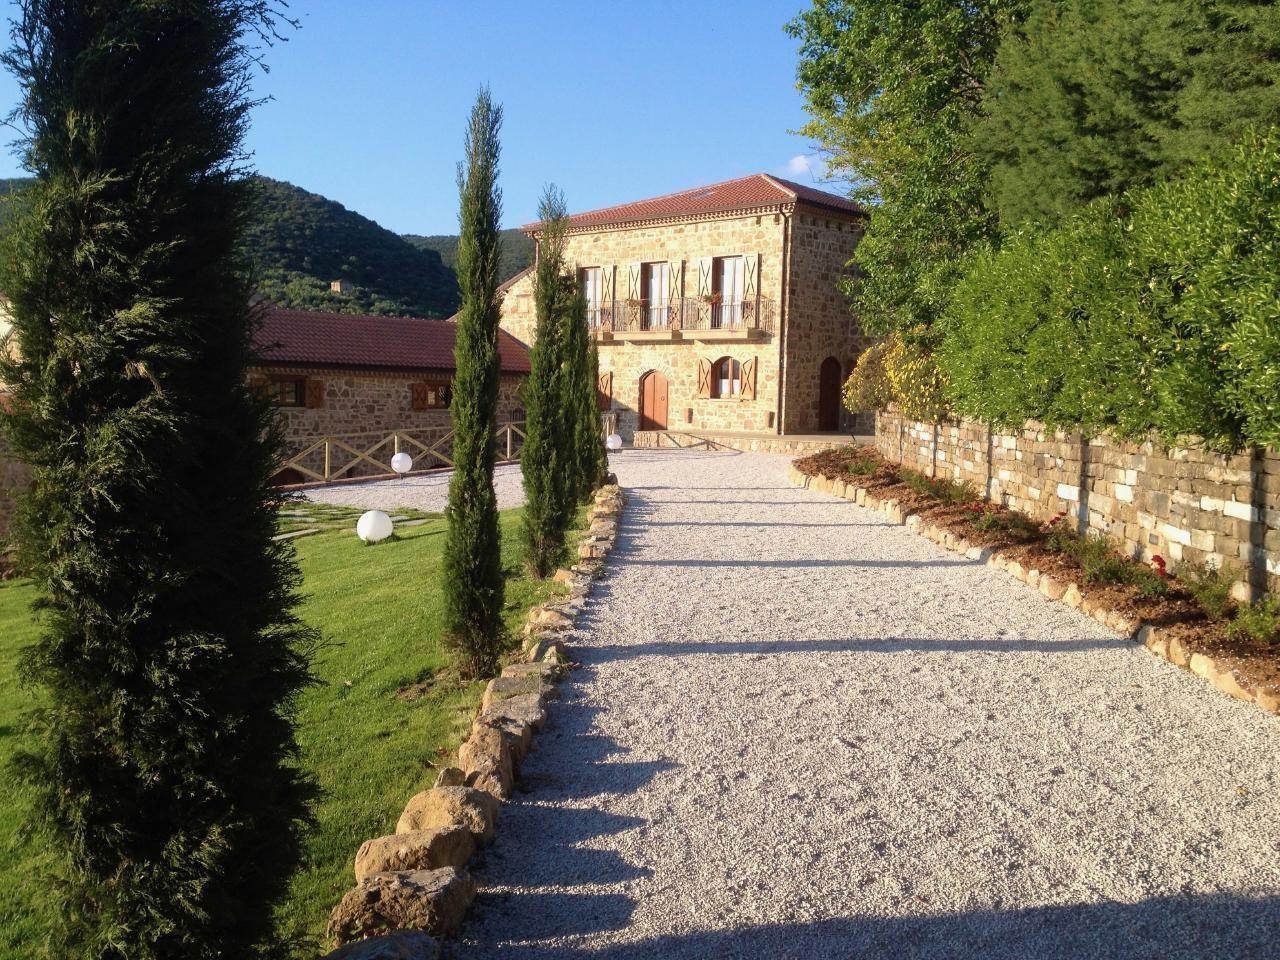 Nette Ferienwohnung in Santa Maria mit Garten und   in Italien